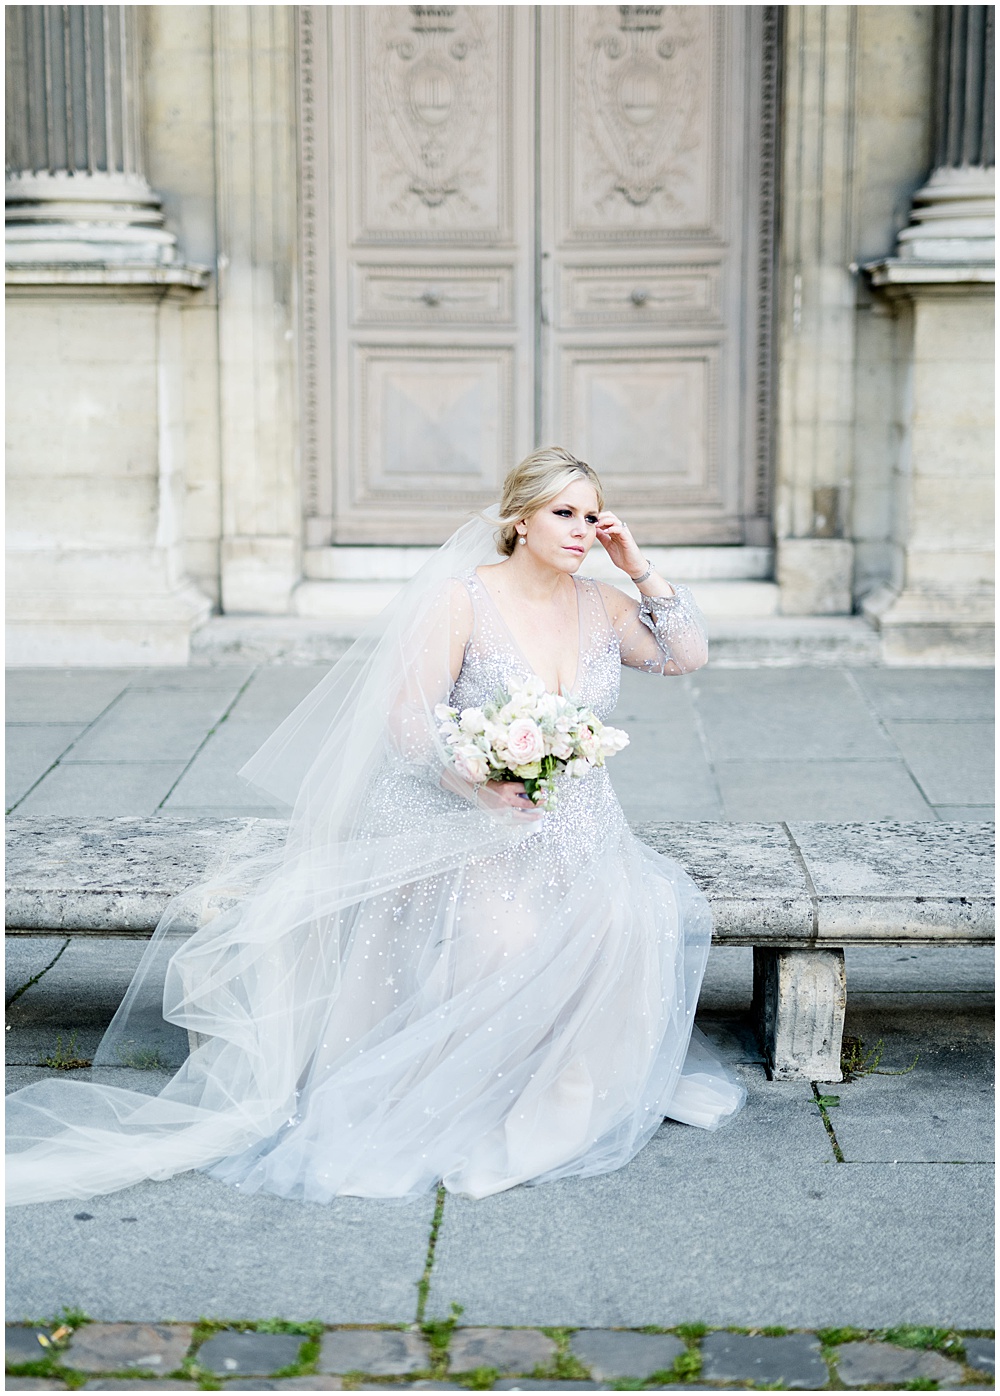 The Louvre Paris, Paris wedding Photographer, destination photographer